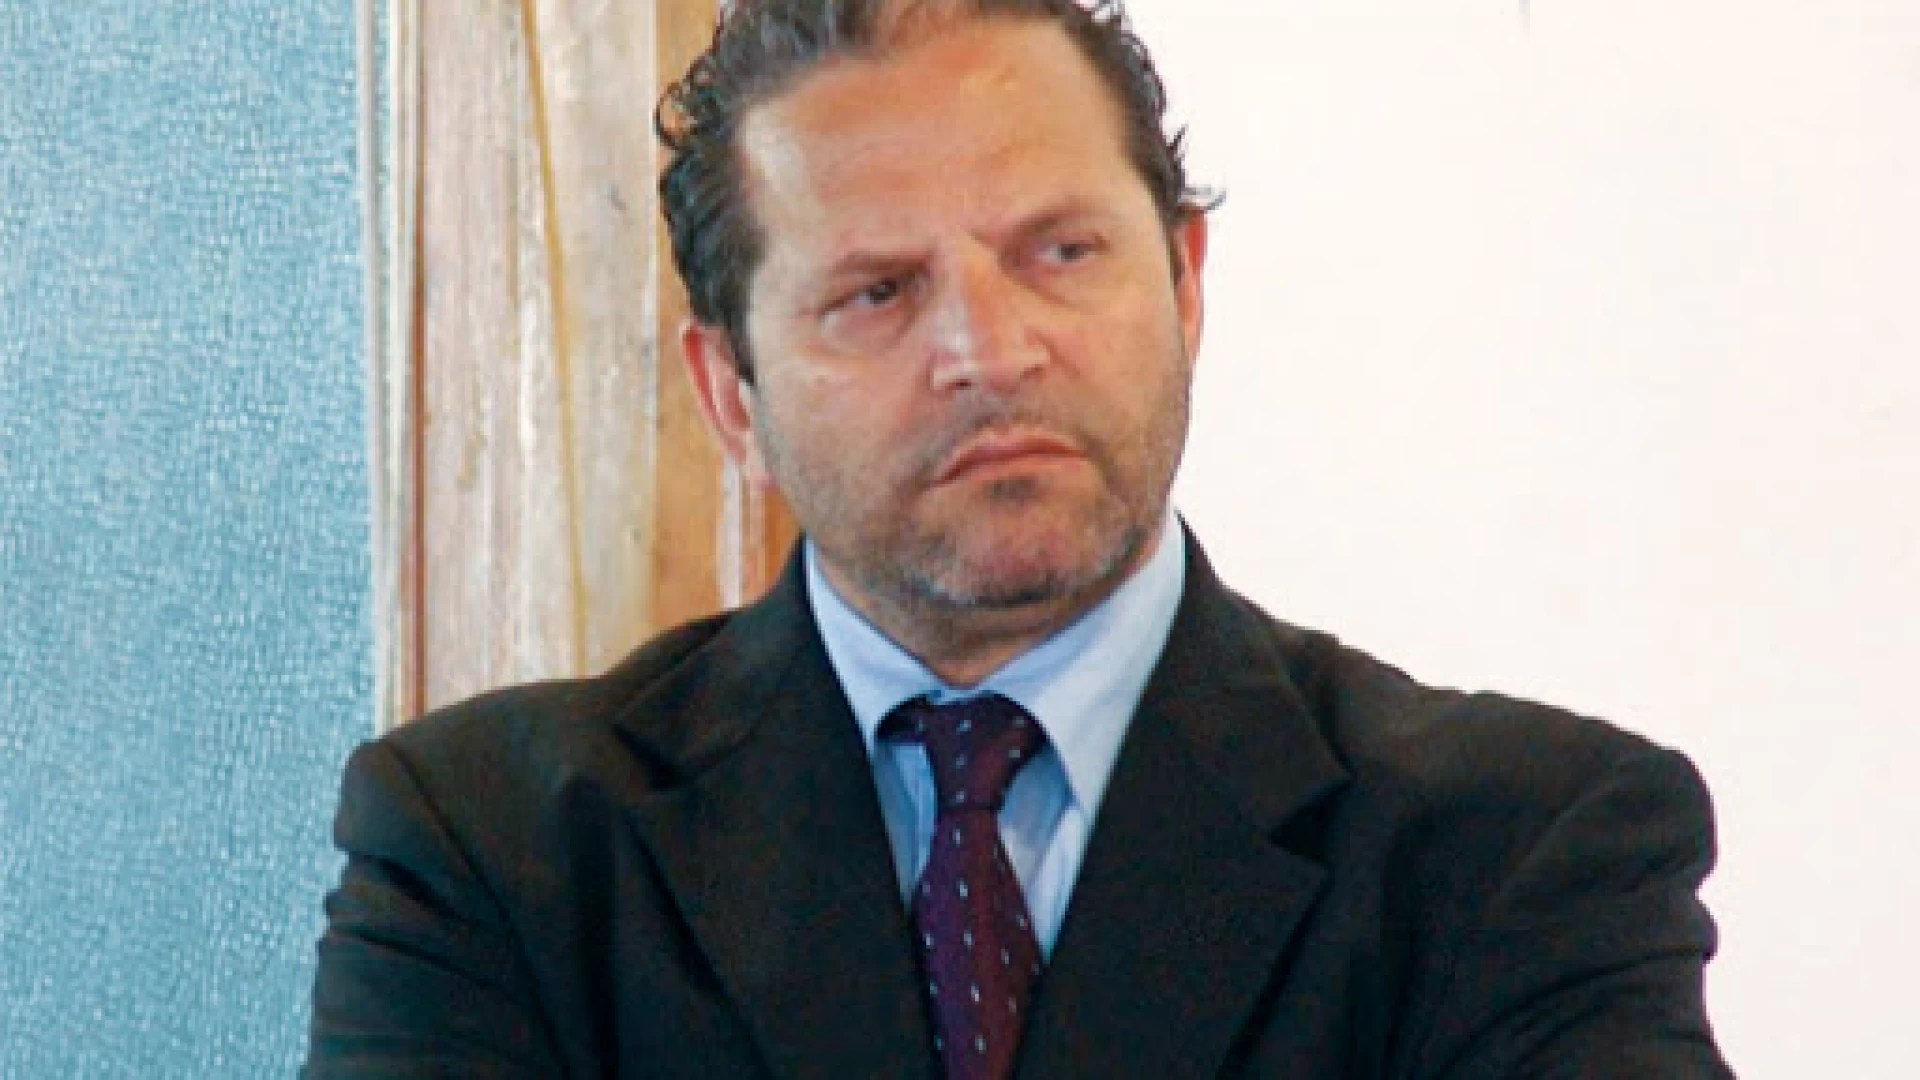 Costituito in Molise il comitato referendario del “Si” al taglio dei parlamentari. Lorenzo Lommano è il presidente.